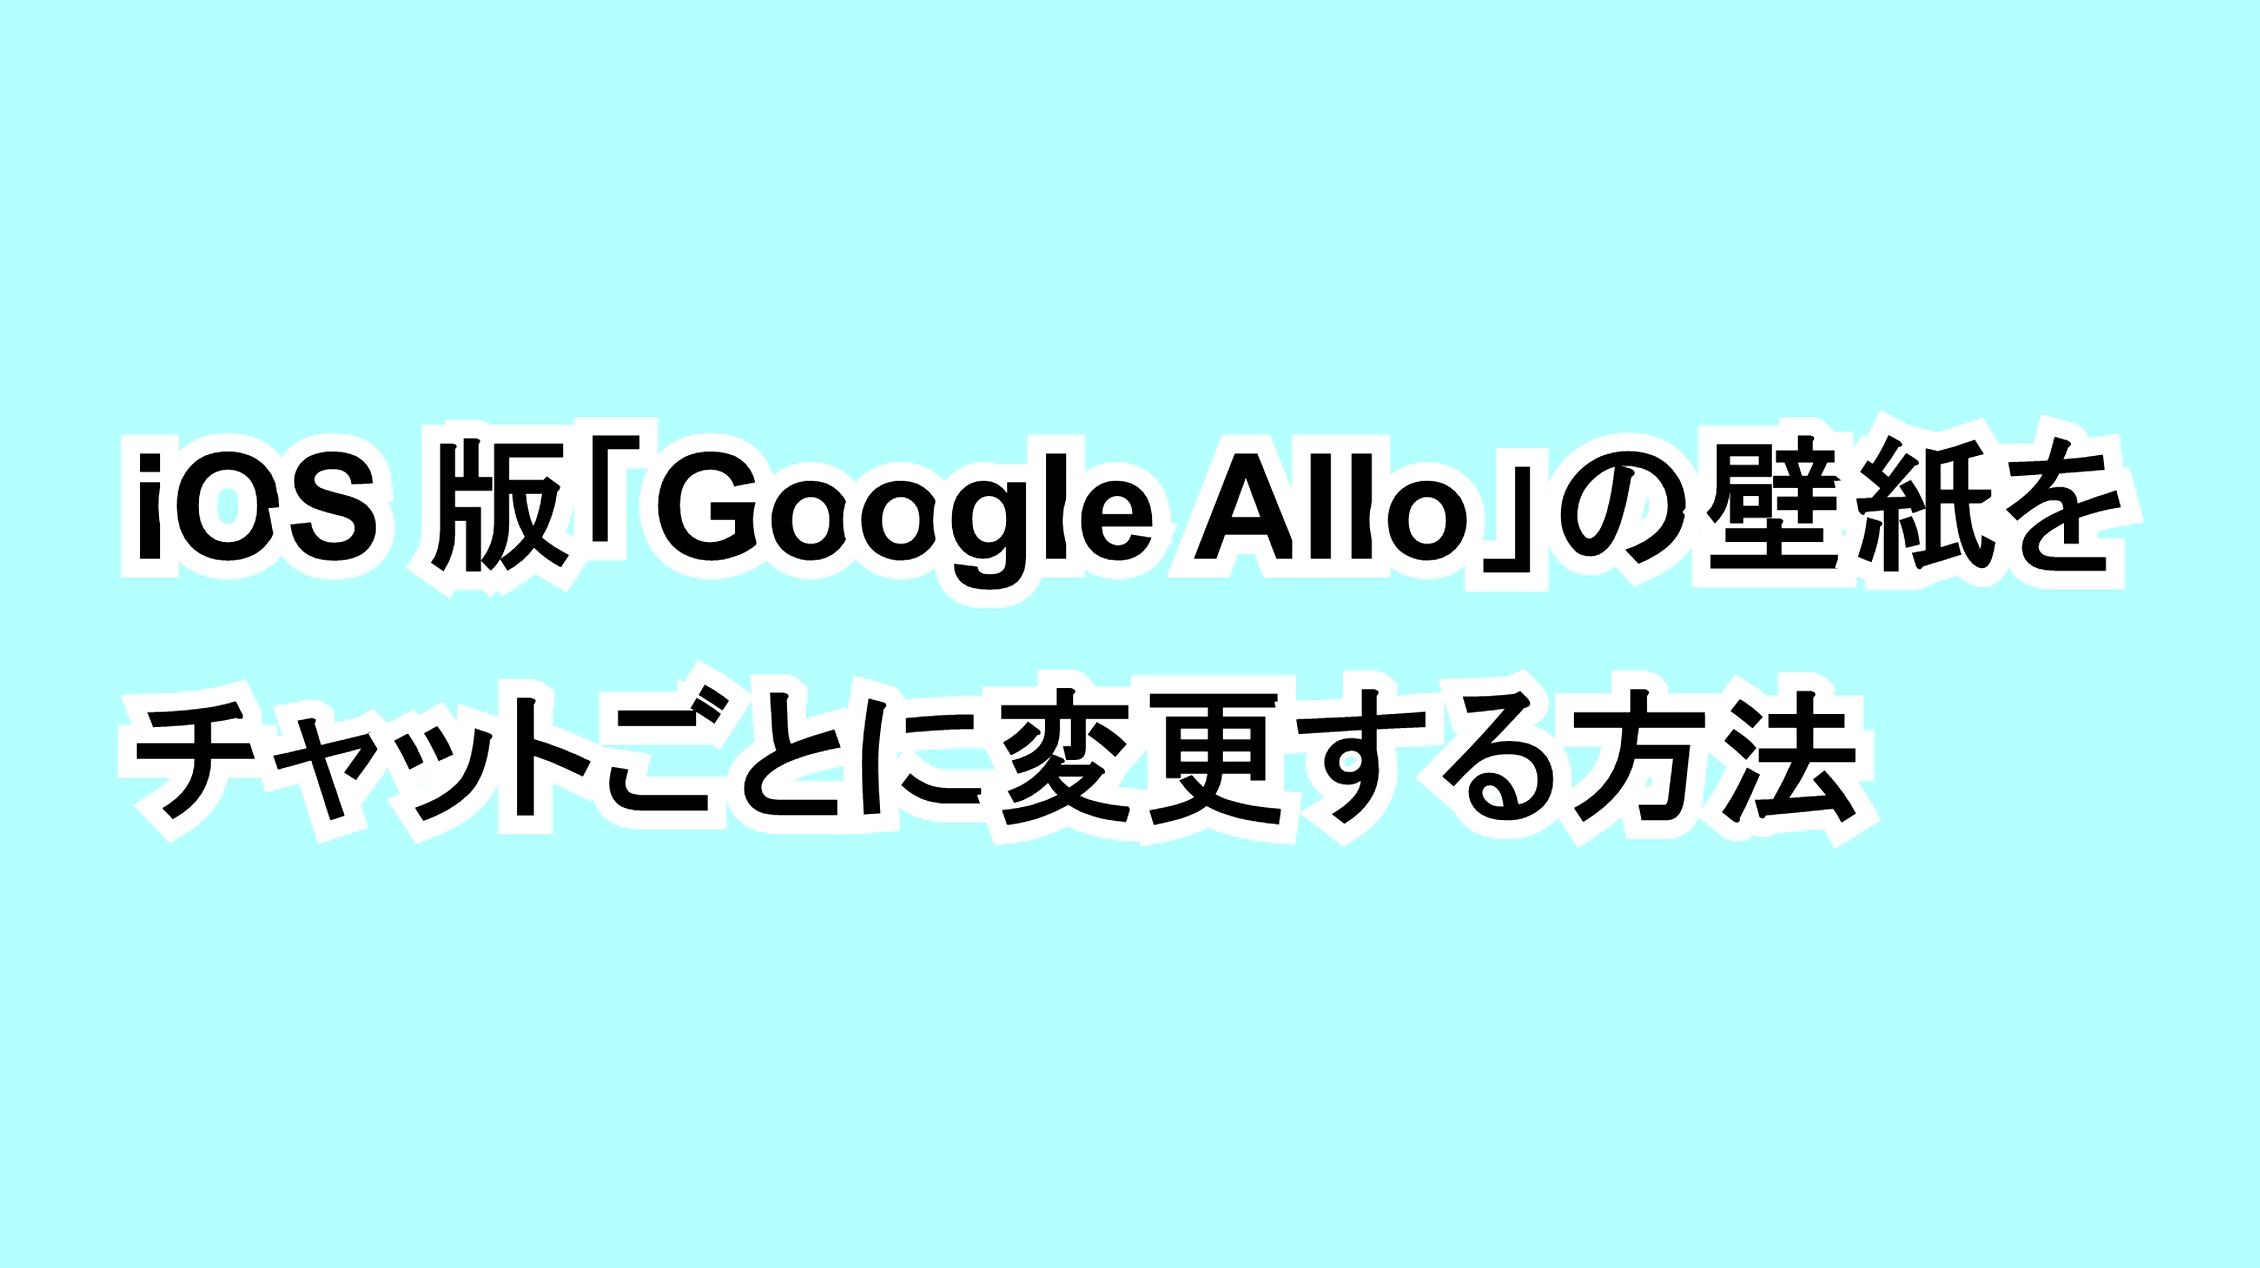 iOS版「Google Allo」の壁紙をチャットごとに変更する方法